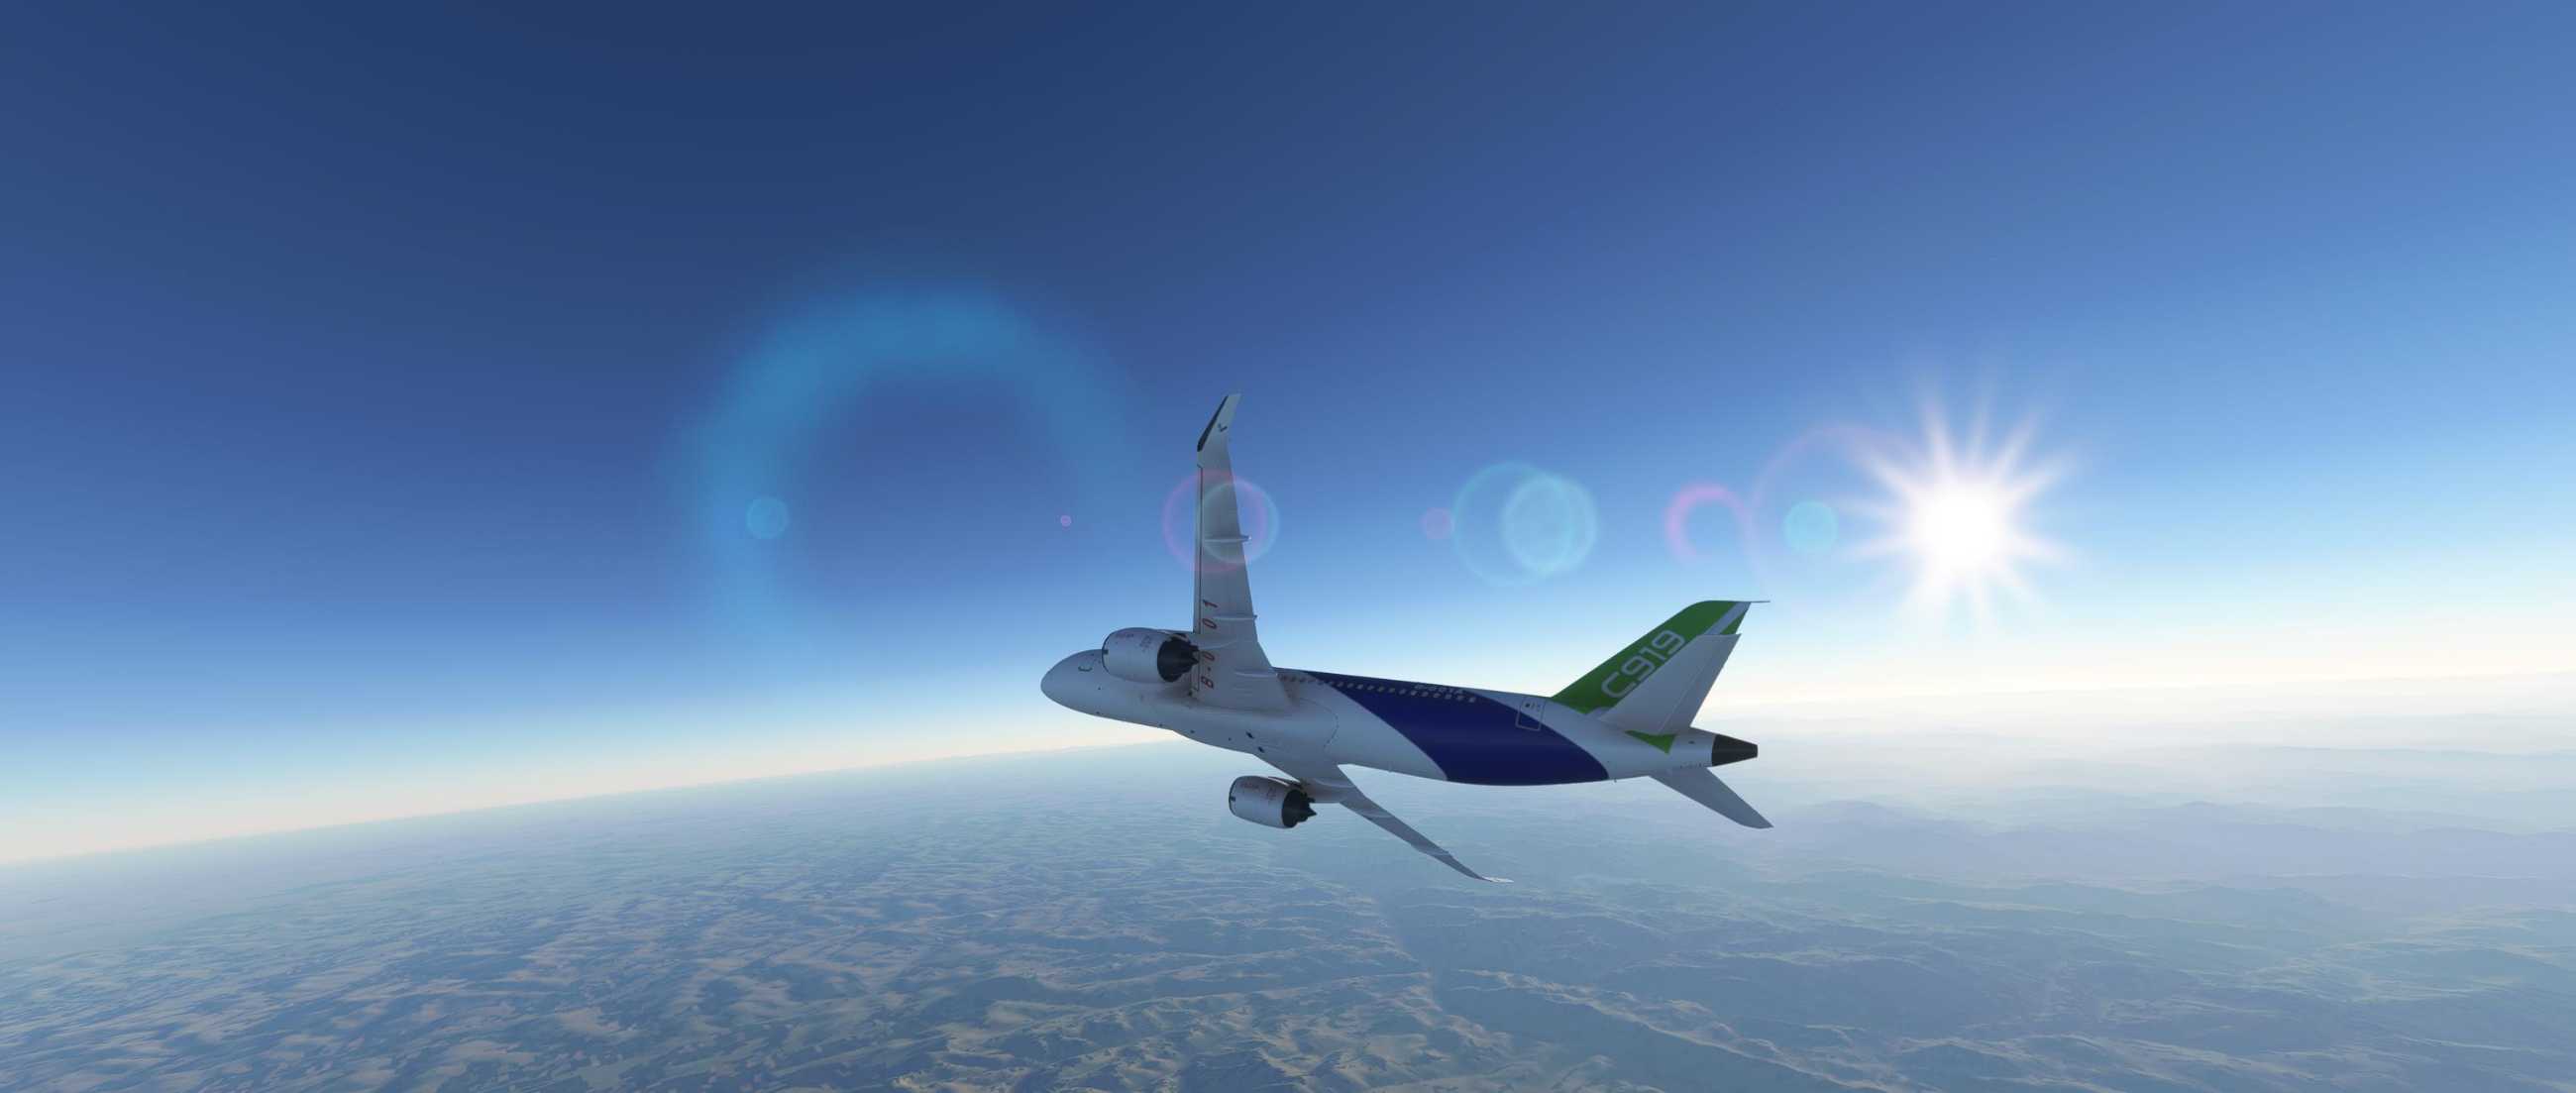 FYCYC-C919 国产大飞机机模 微软模拟飞行演示-9035 